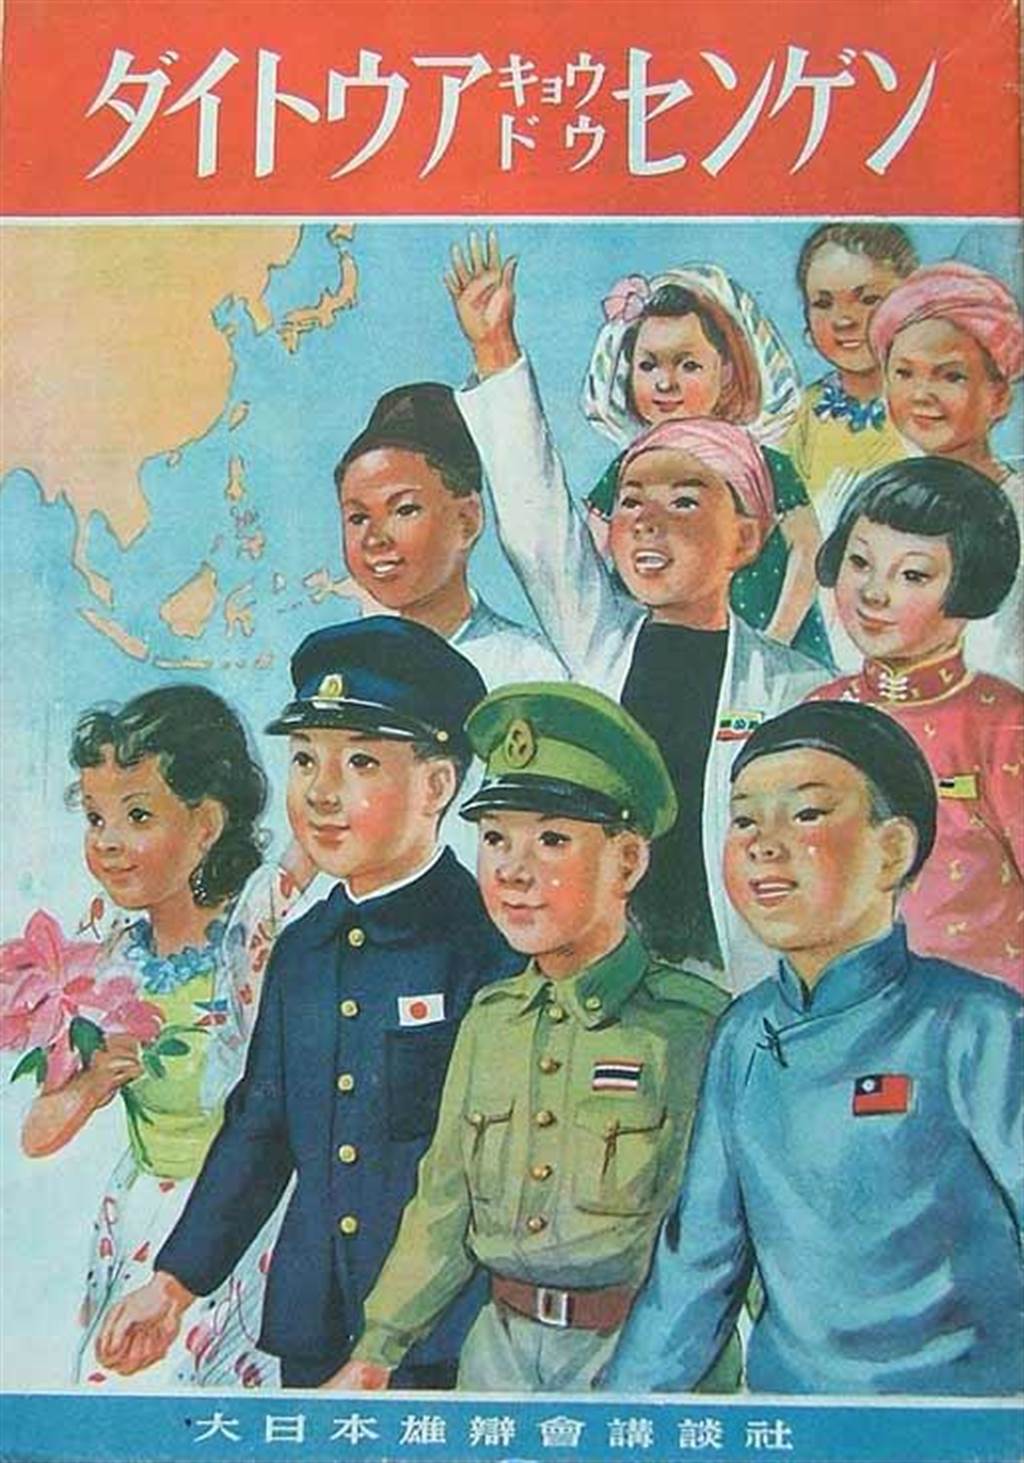 日本在太平洋戰爭期間設計的宣傳海報，鼓吹代表亞洲各國的少男少女們團結在一起對抗西方國家。（網路照片）